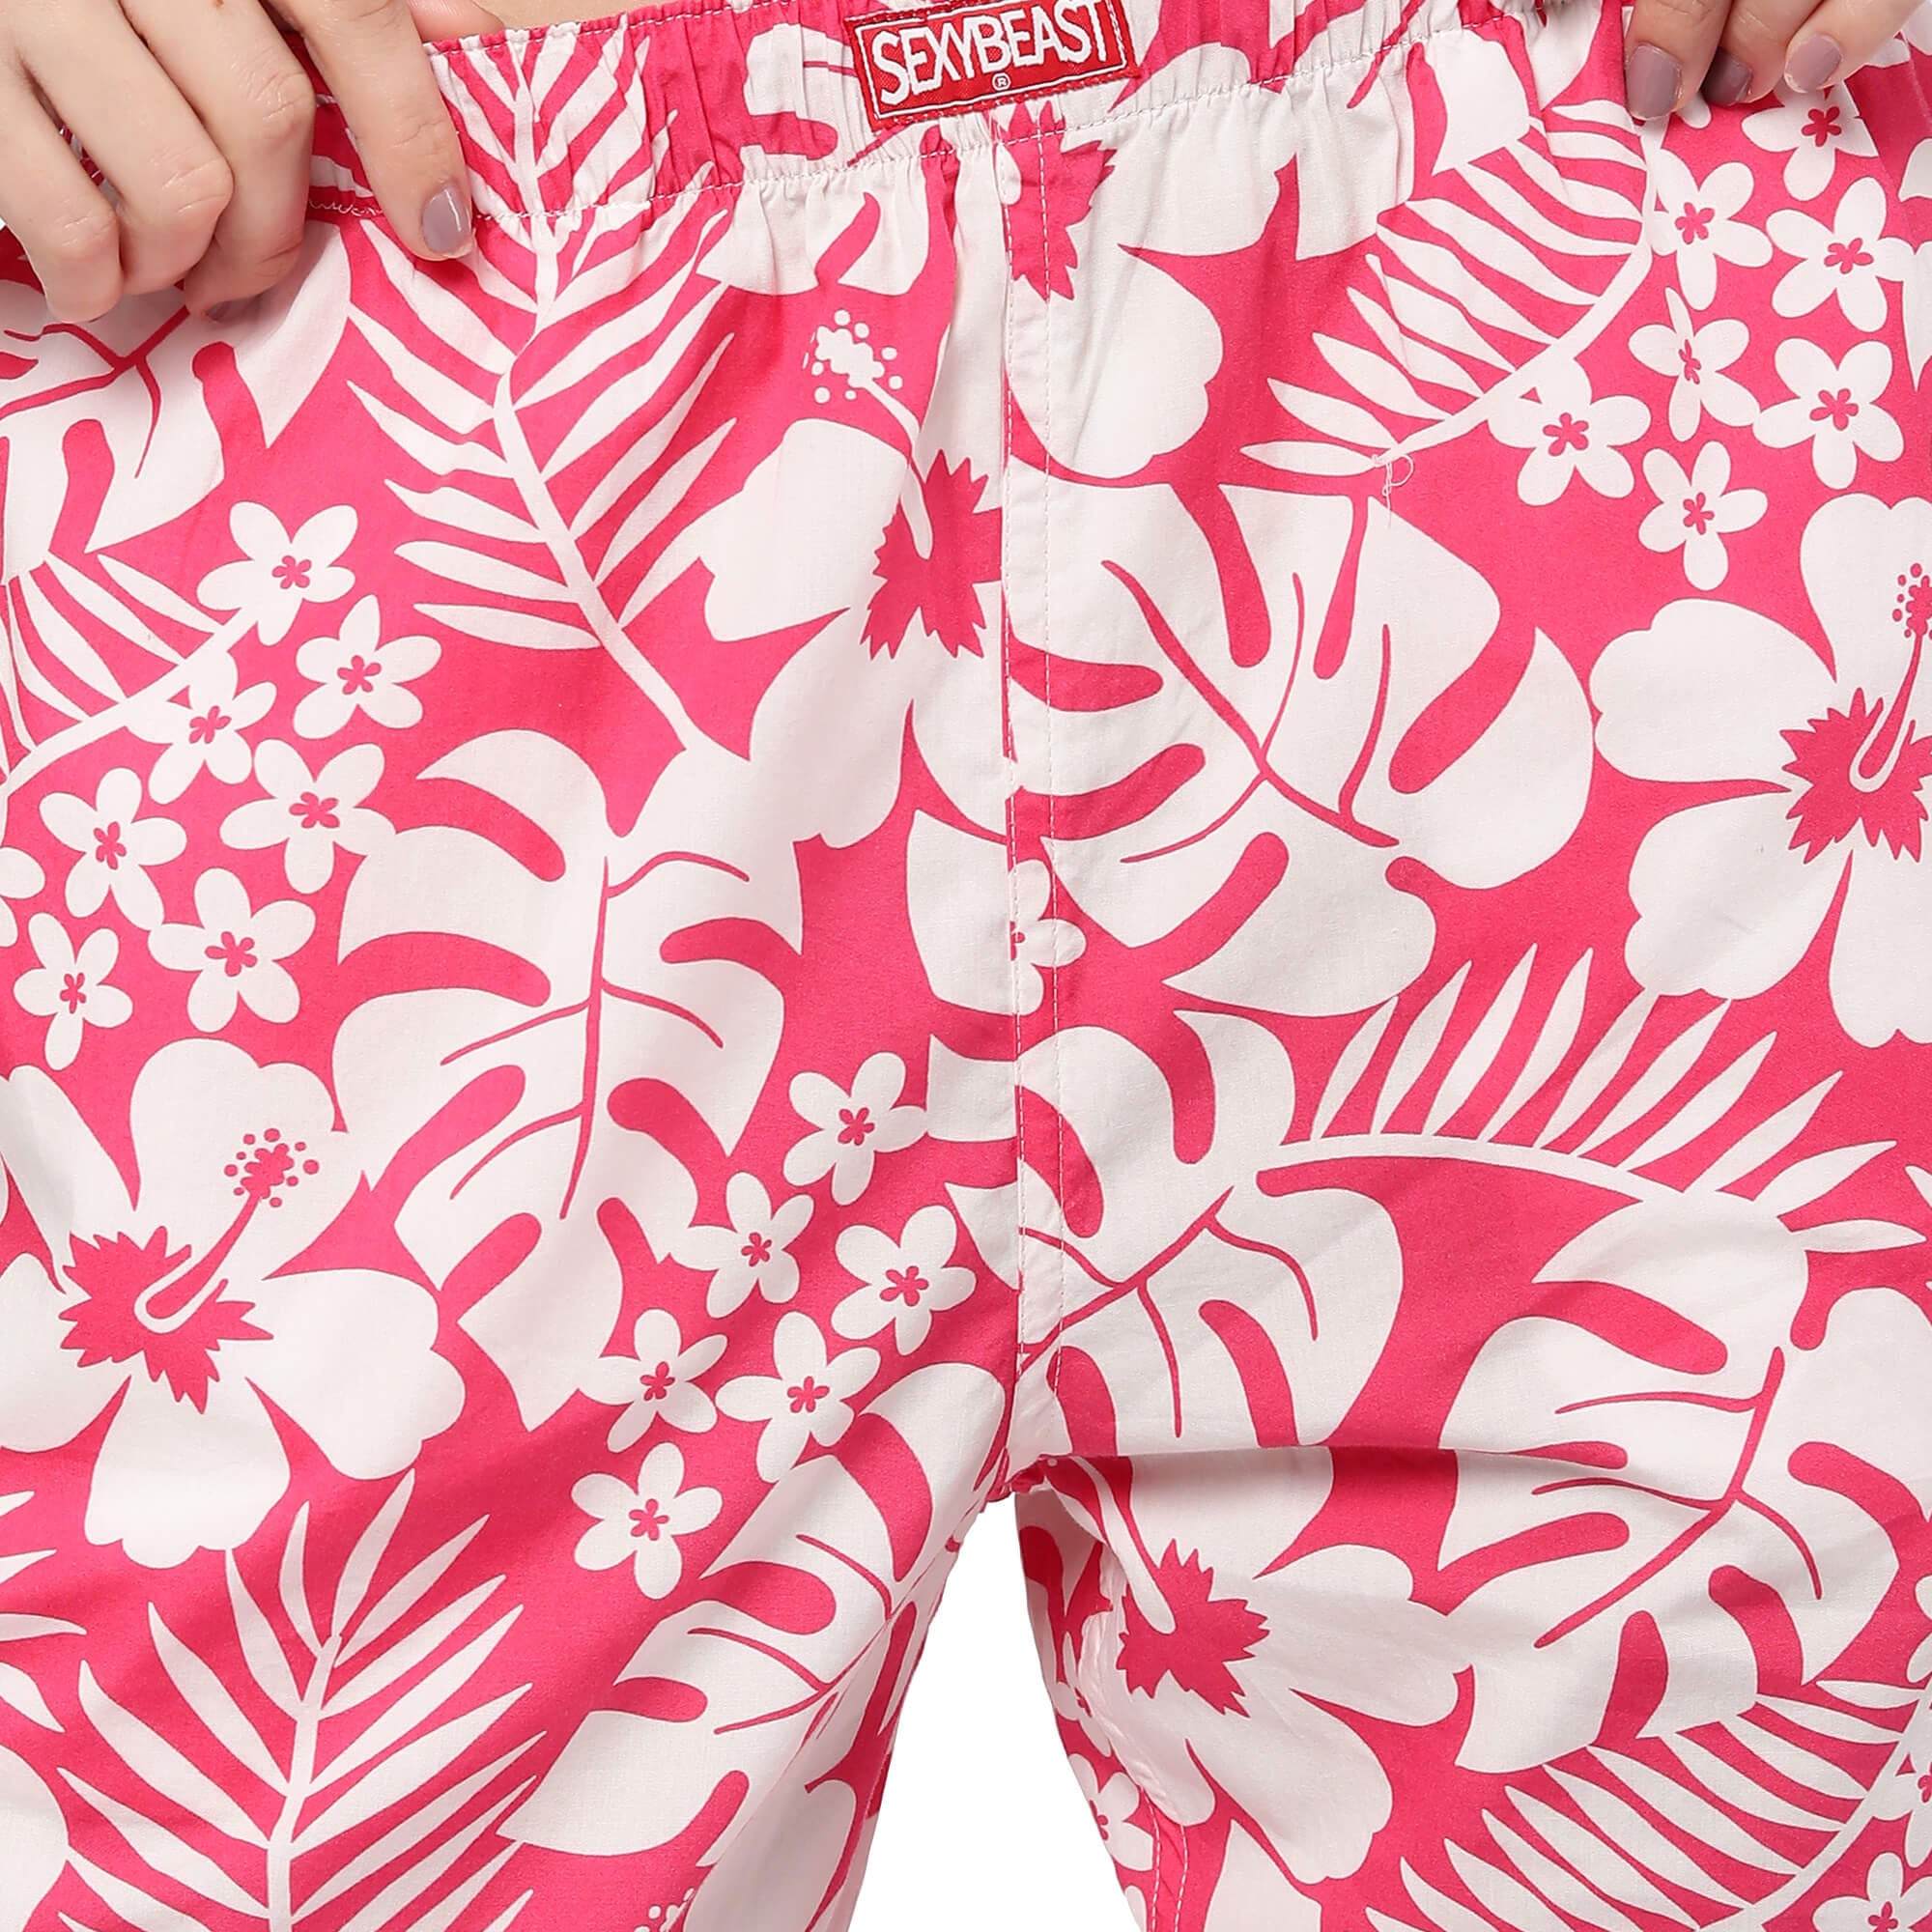 Printed cotton Pyjamas for Women